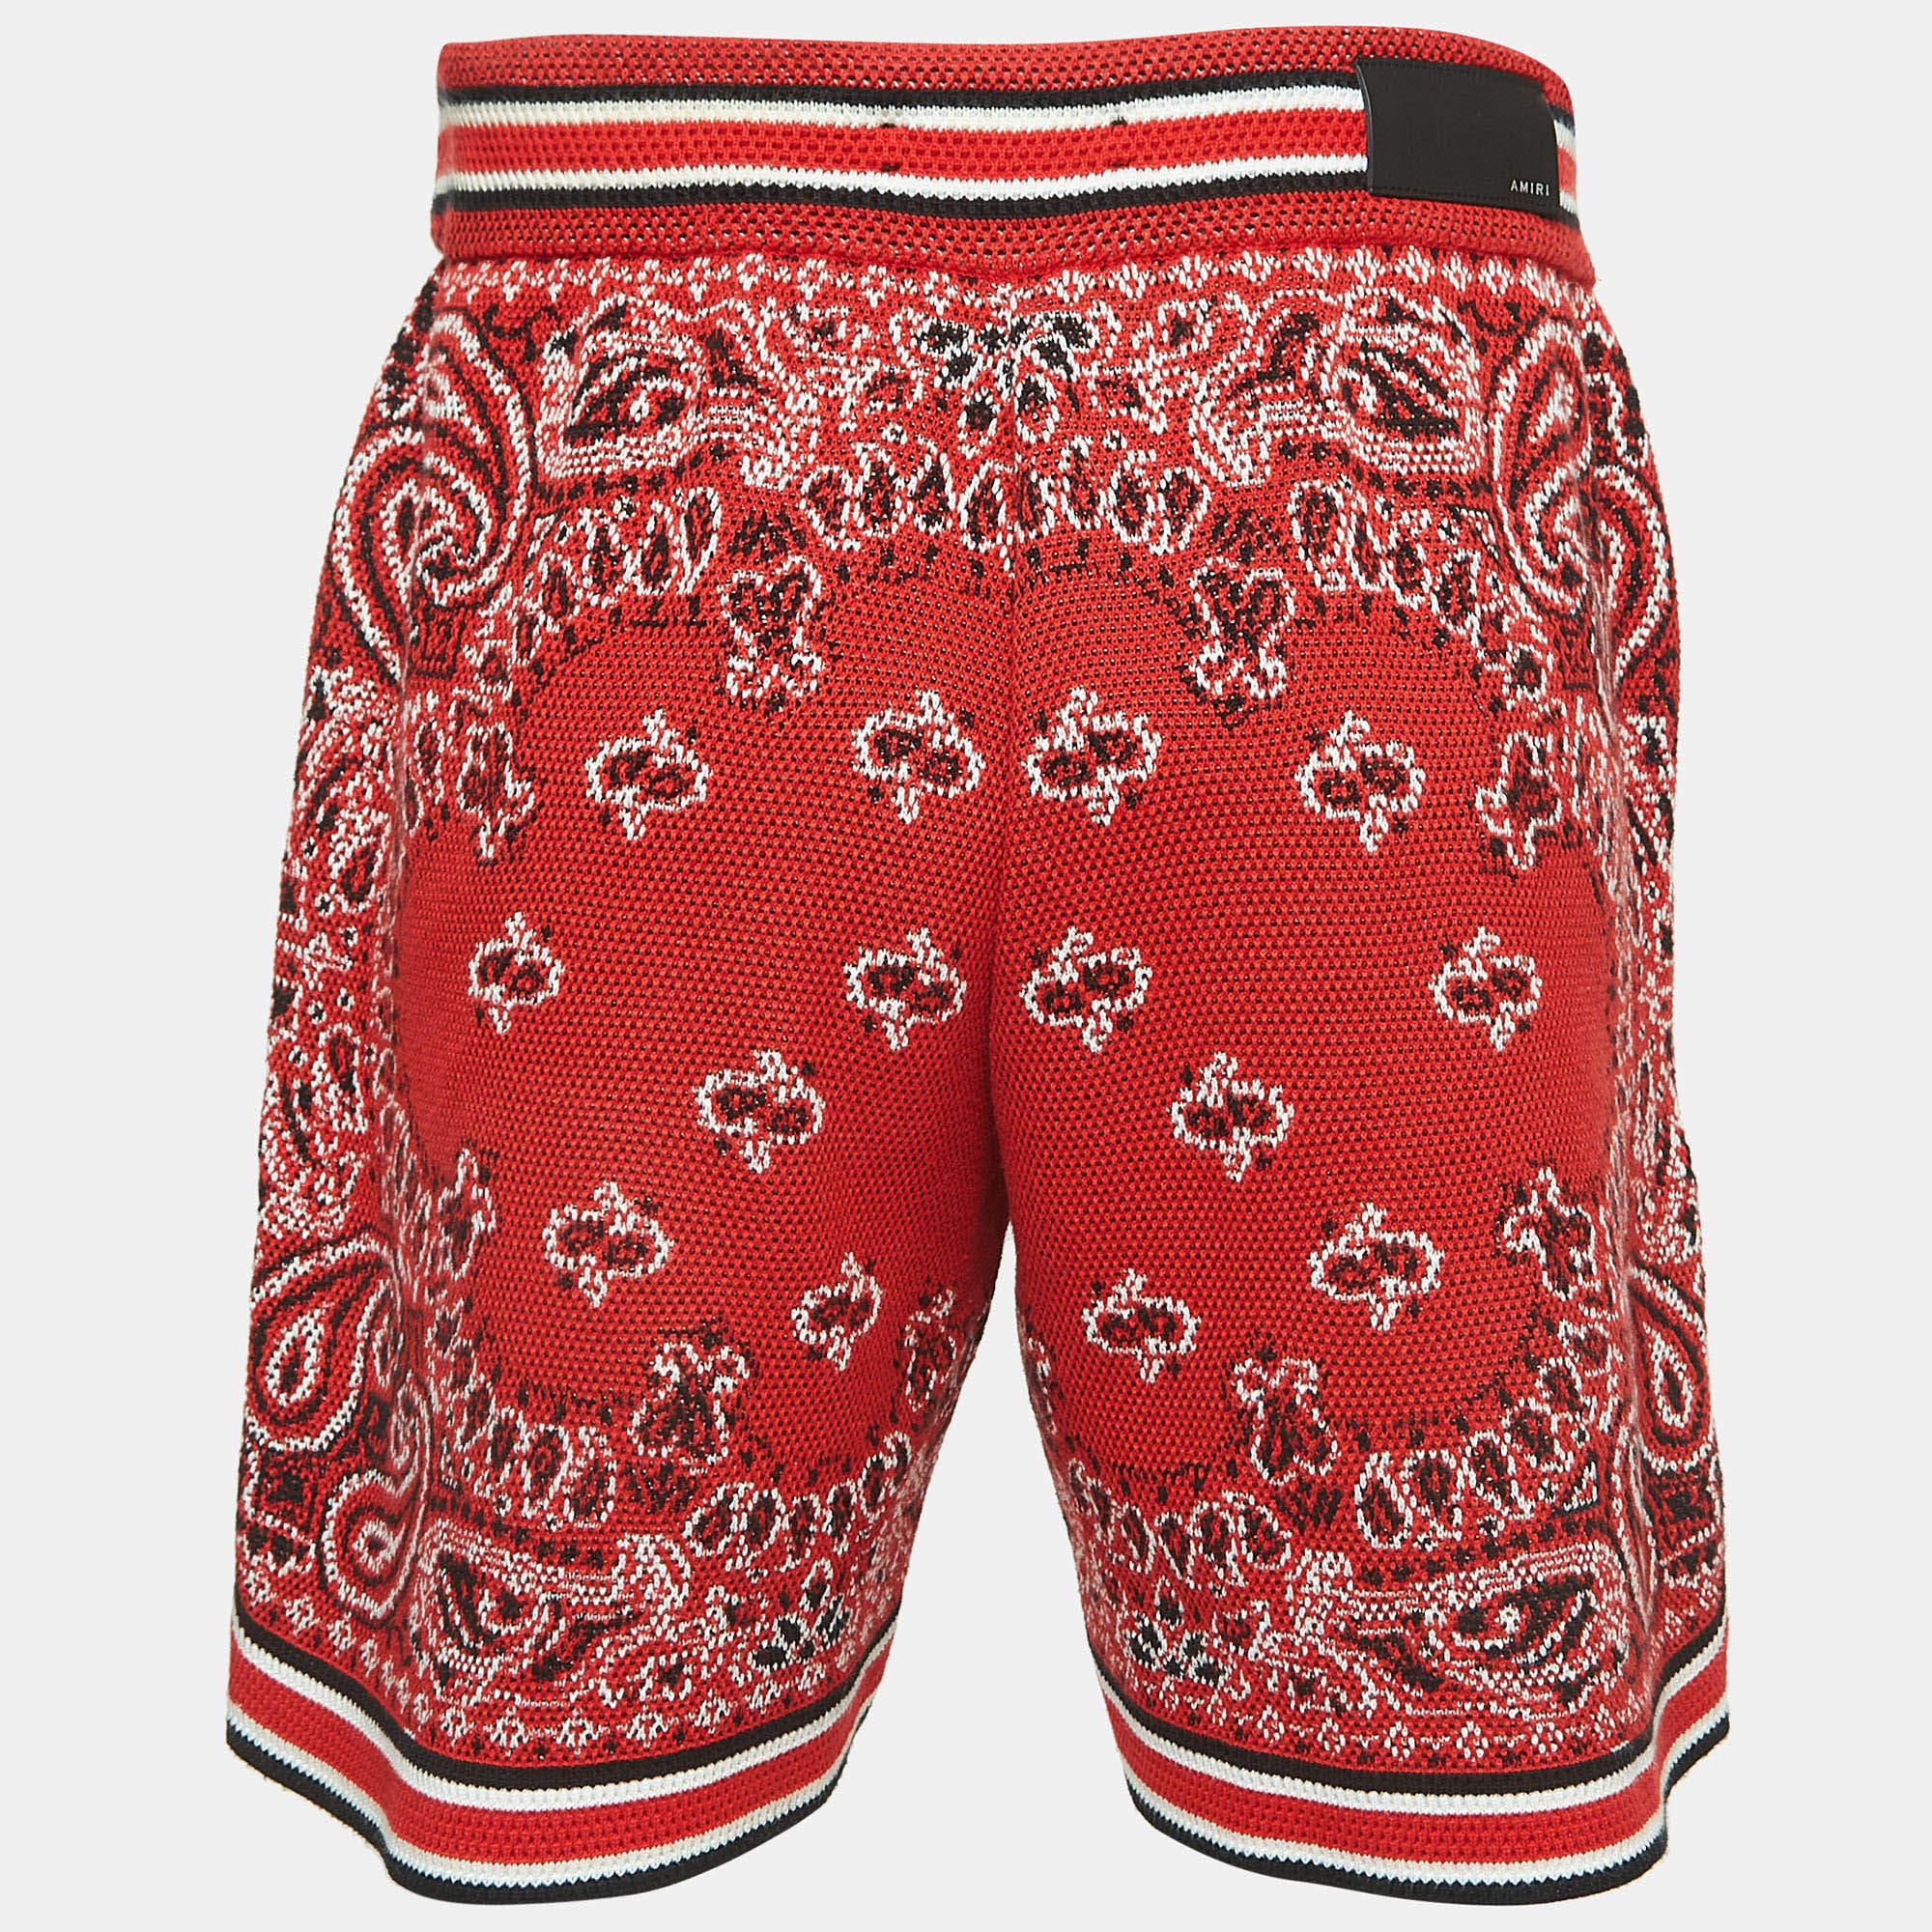 Les vacances à la plage nécessitent une paire de shorts élégants comme celui-ci. Cousu à l'aide d'un tissu de haute qualité, ce short est agrémenté de détails classiques et présente une superbe longueur. A porter avec des T-shirts.

